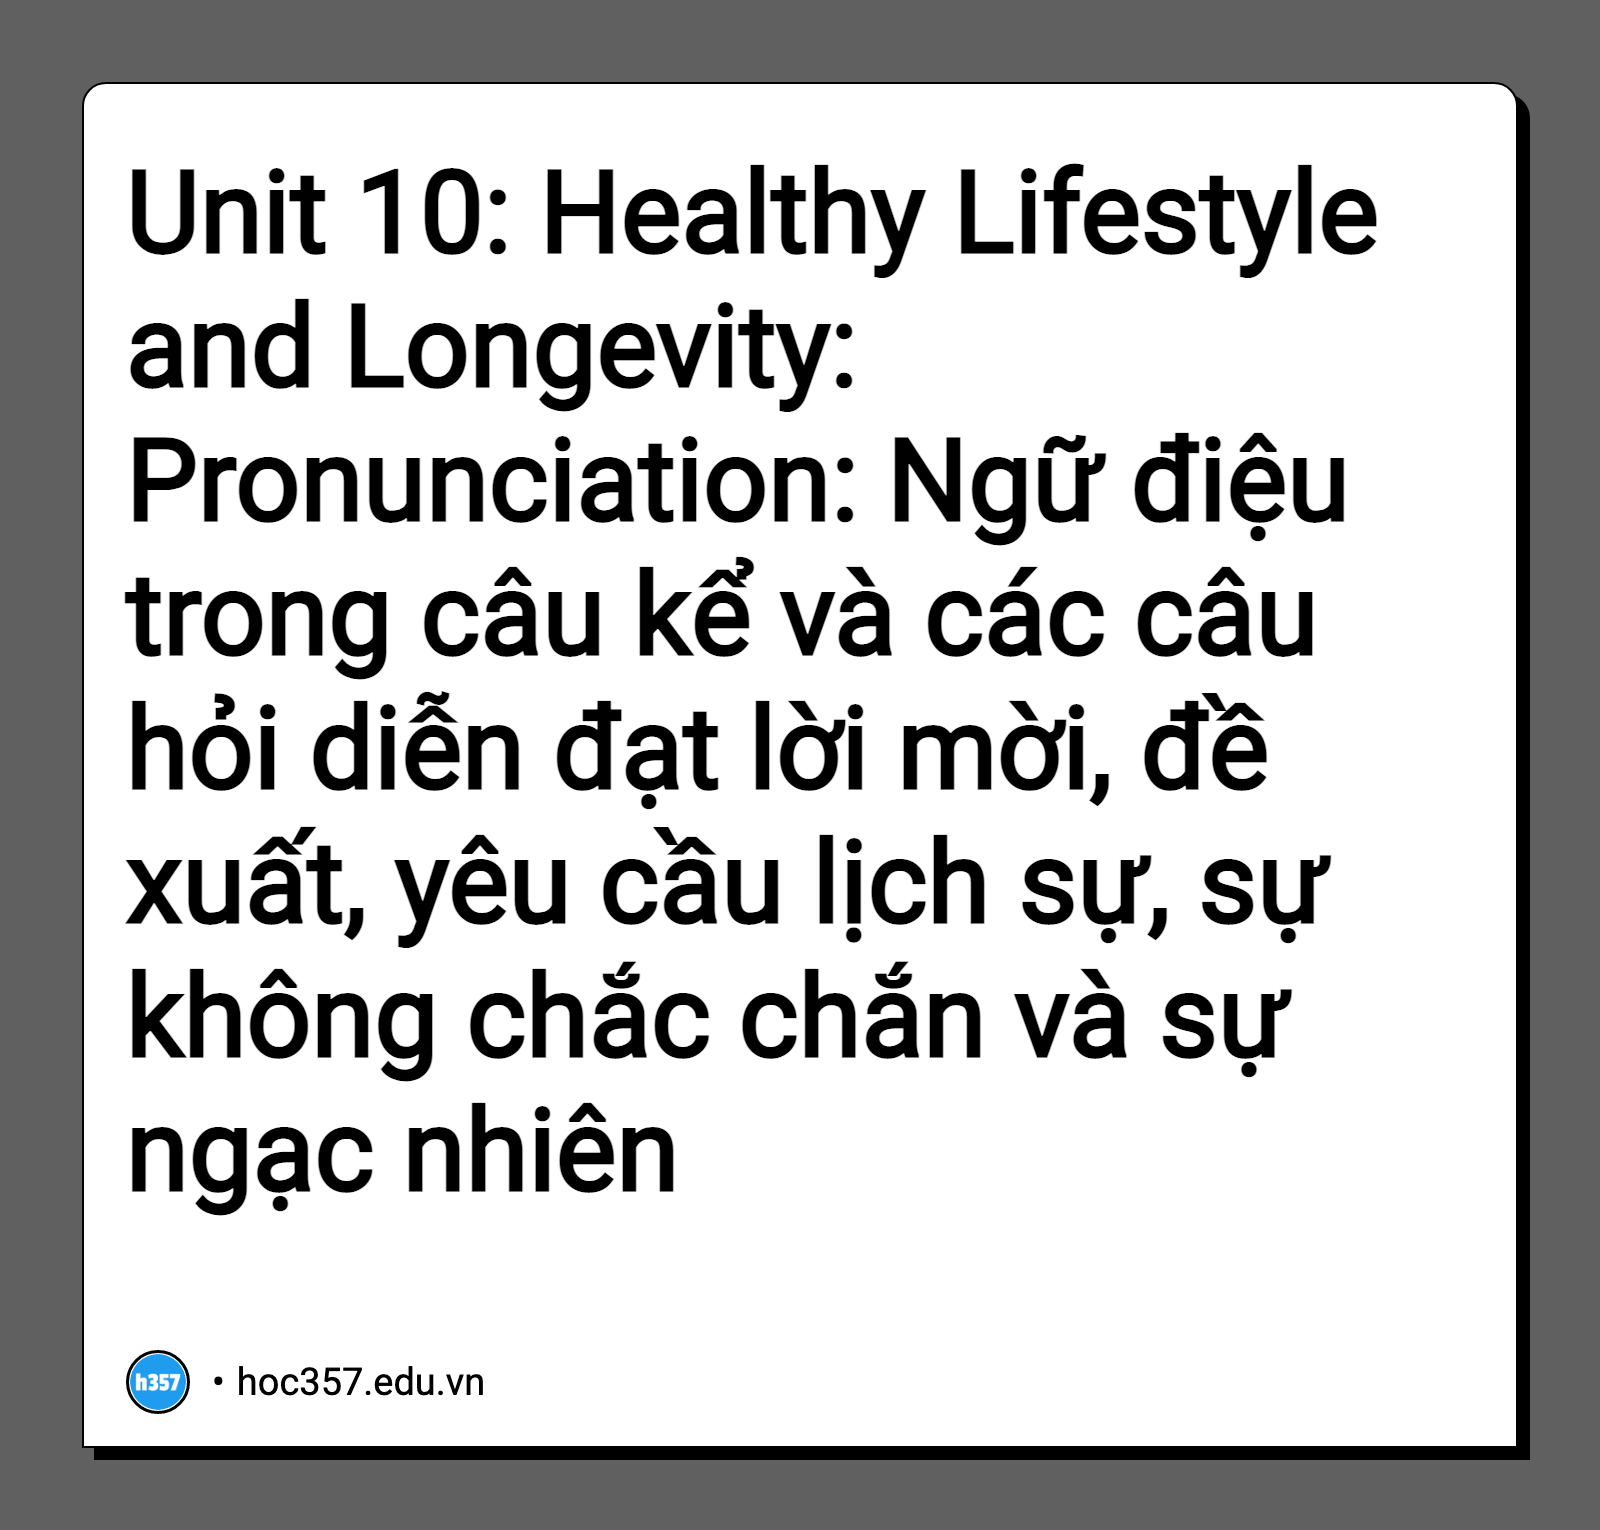 Hình minh họa Unit 10: Healthy Lifestyle and Longevity: Pronunciation: Ngữ điệu trong câu kể và các câu hỏi diễn đạt lời mời, đề xuất, yêu cầu lịch sự, sự không chắc chắn và sự ngạc nhiên